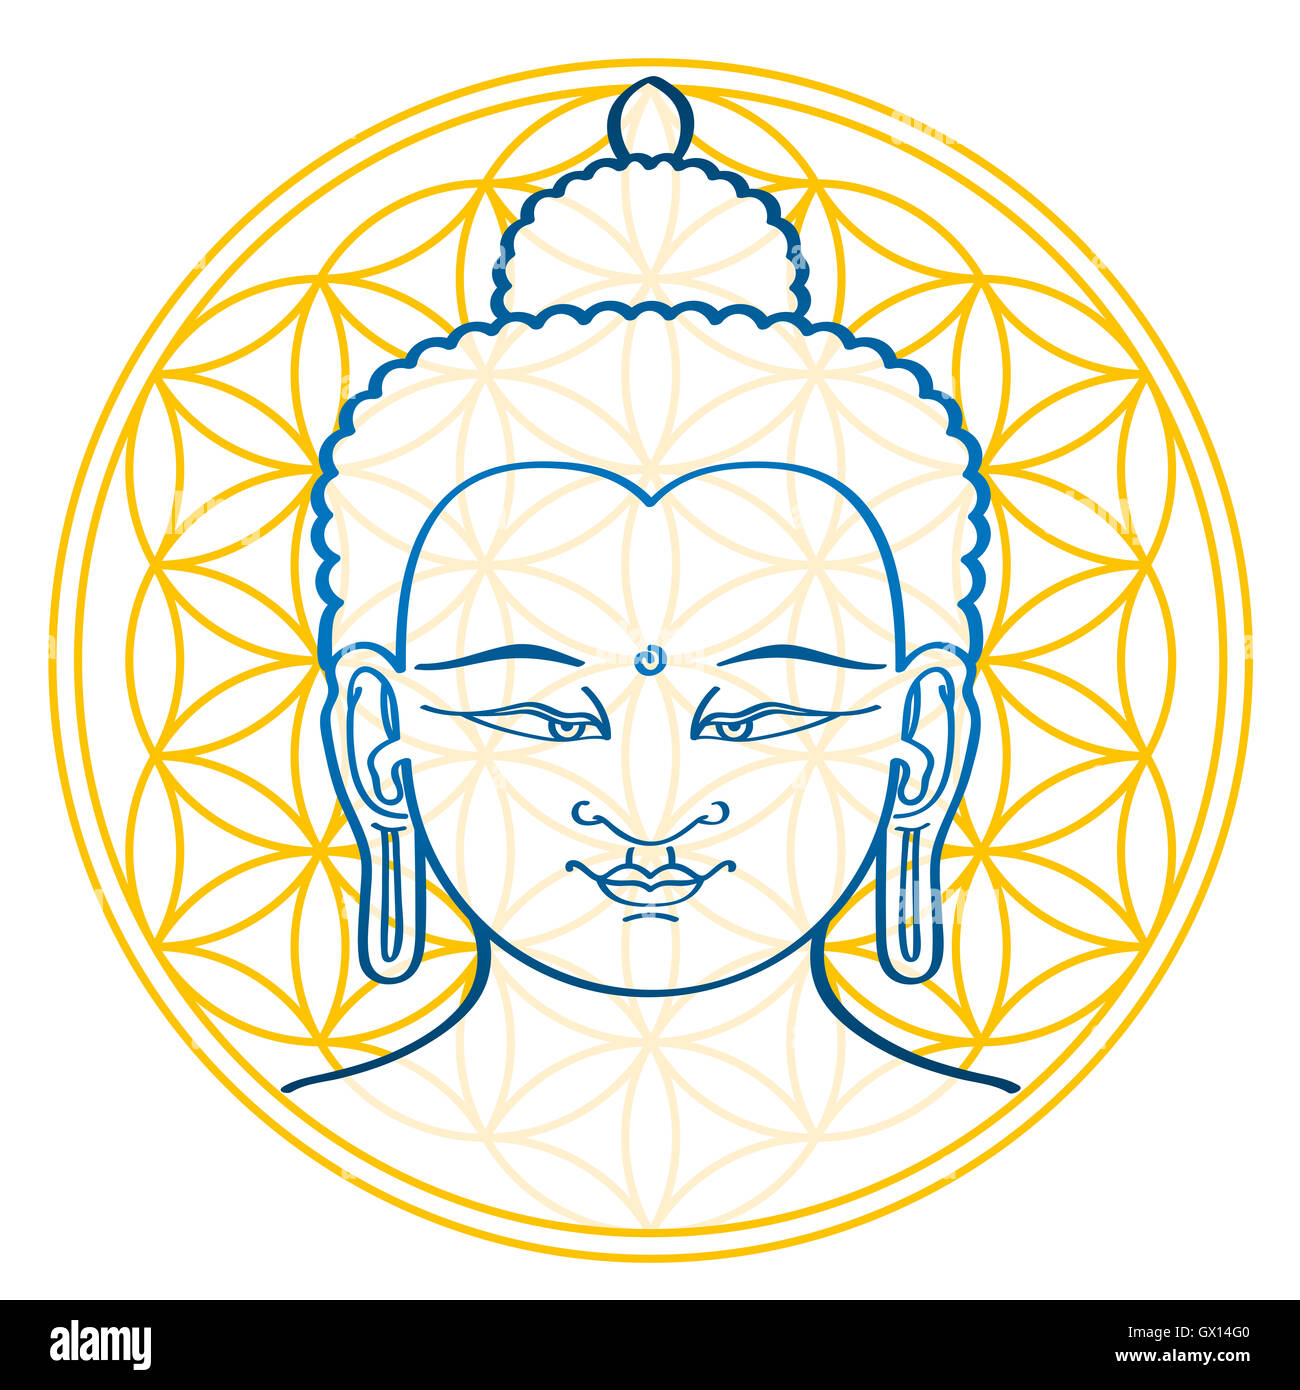 Il Buddha e il Fiore della Vita, una figura geometrica e antico simbolo, composta da più distanziati in modo regolare, cerchi di sovrapposizione. Foto Stock